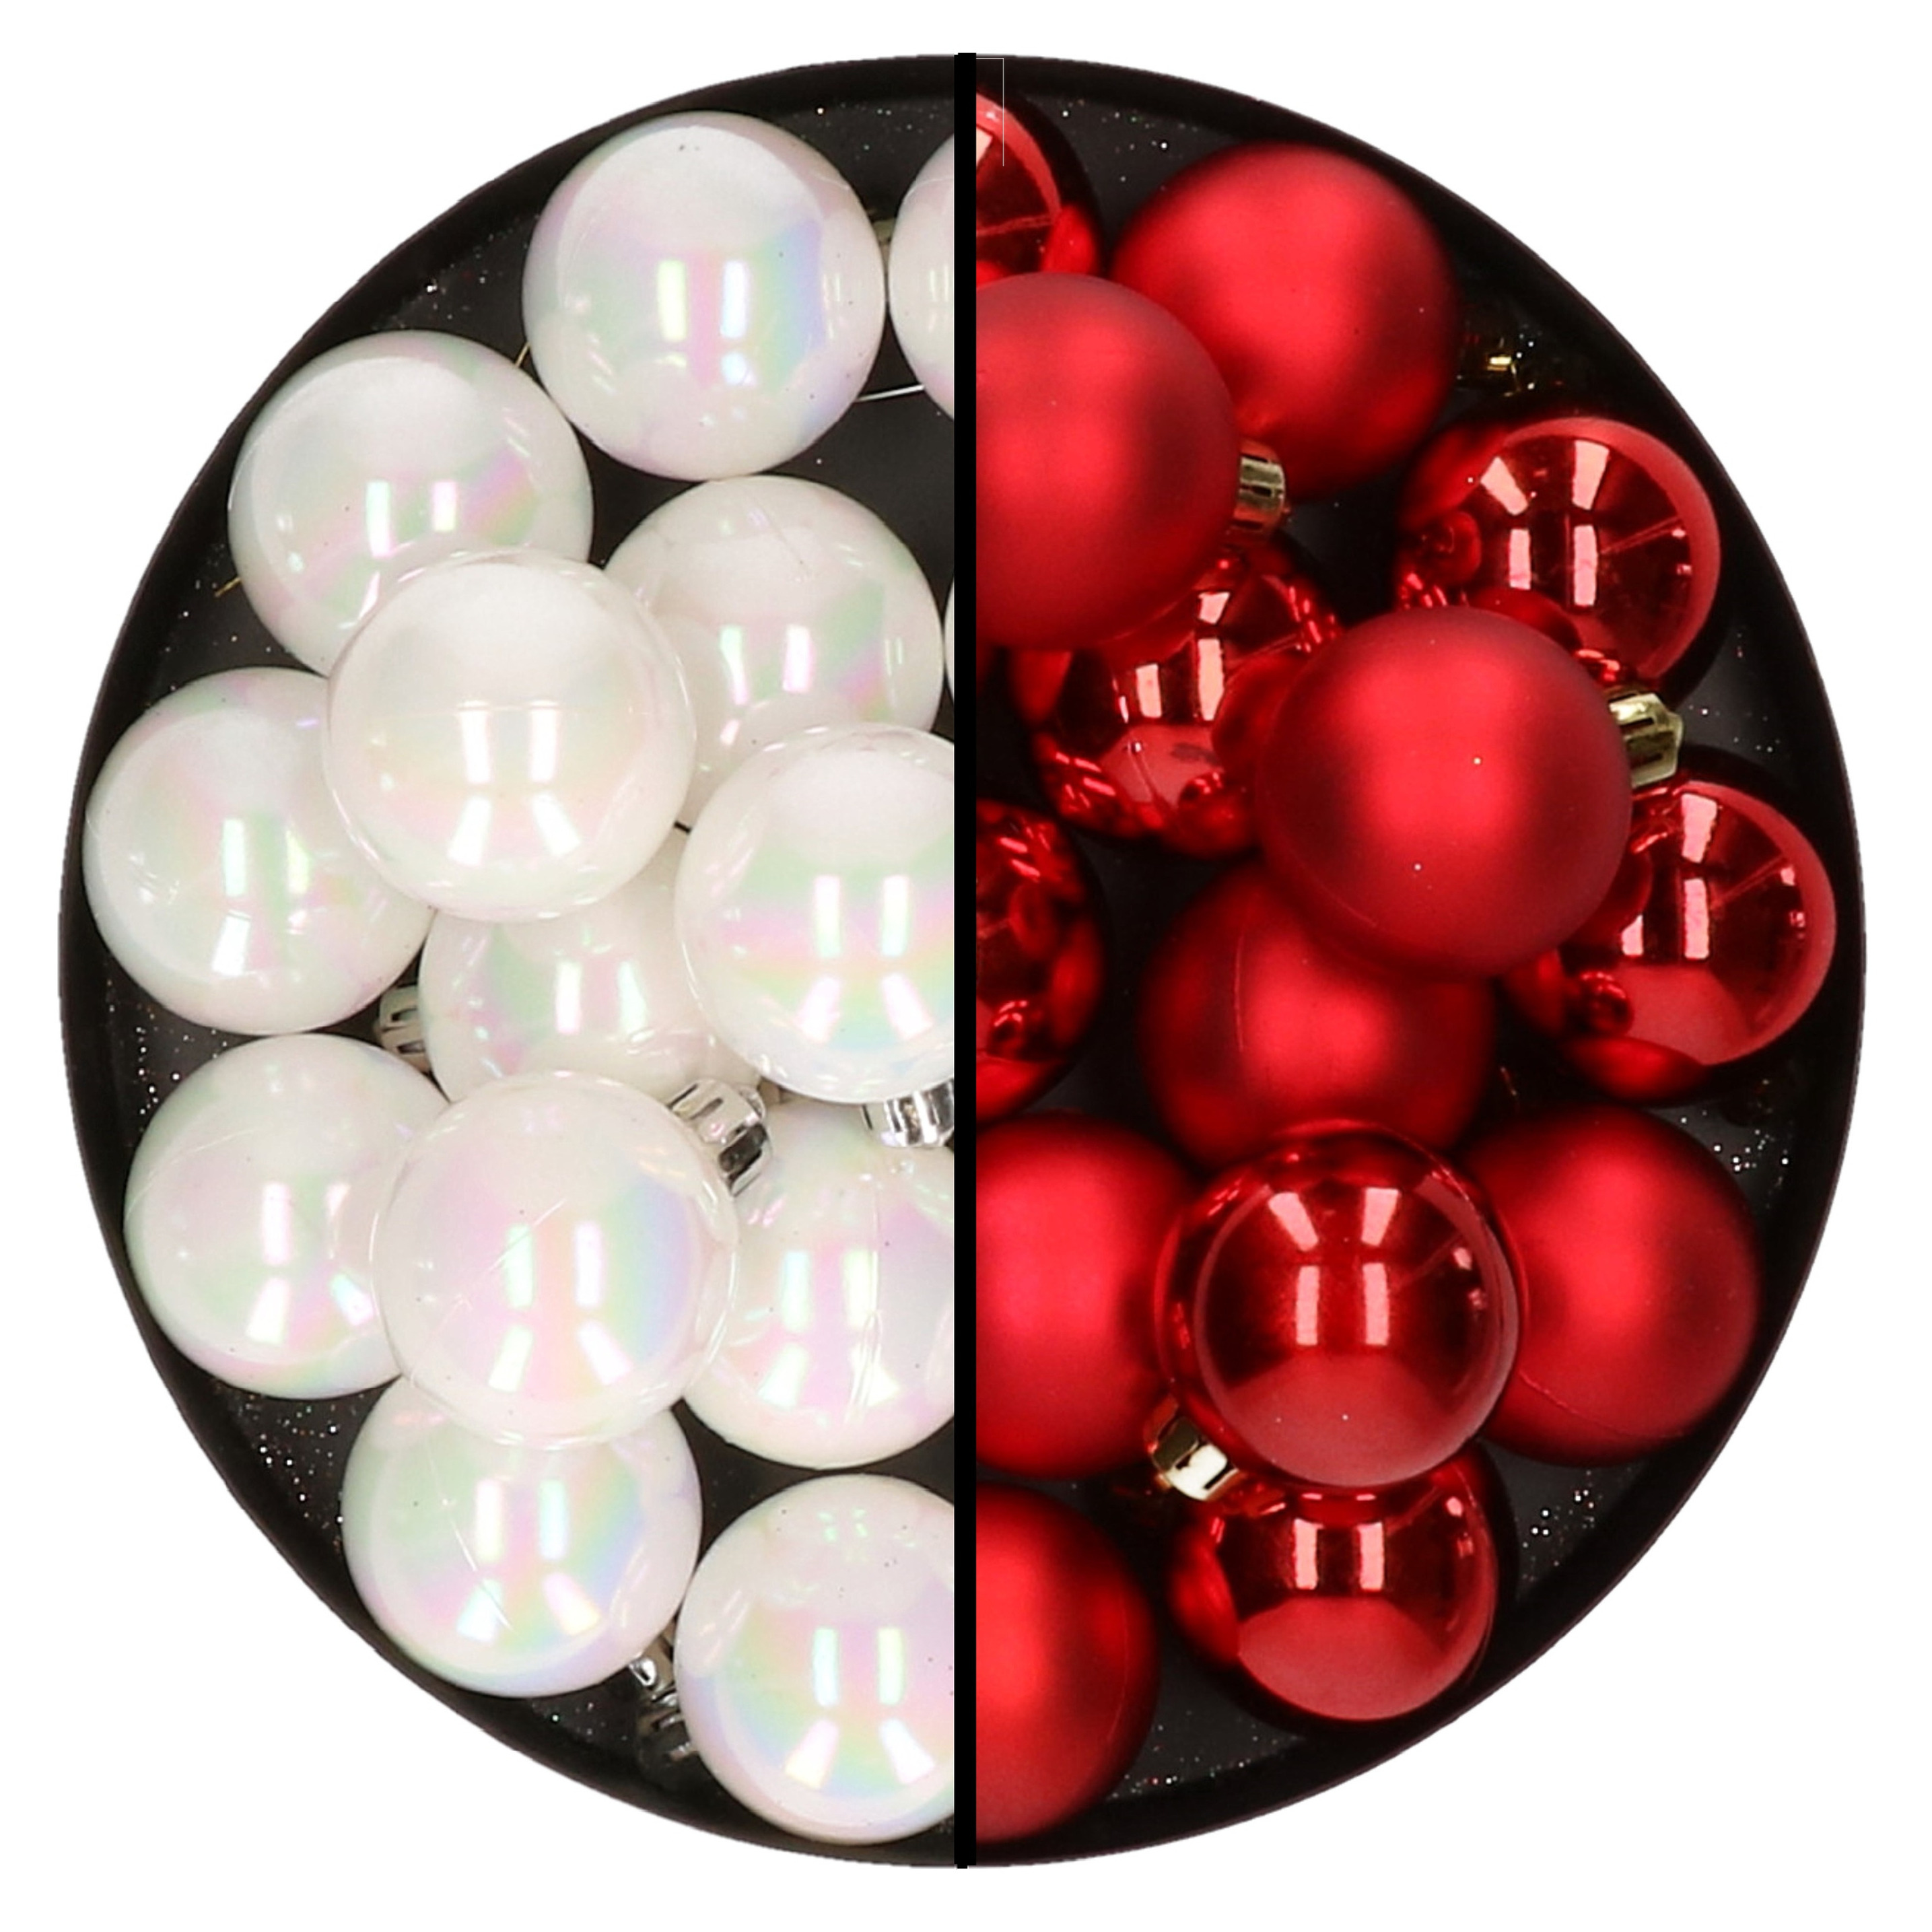 32x stuks kunststof kerstballen mix van parelmoer wit en rood 4 cm